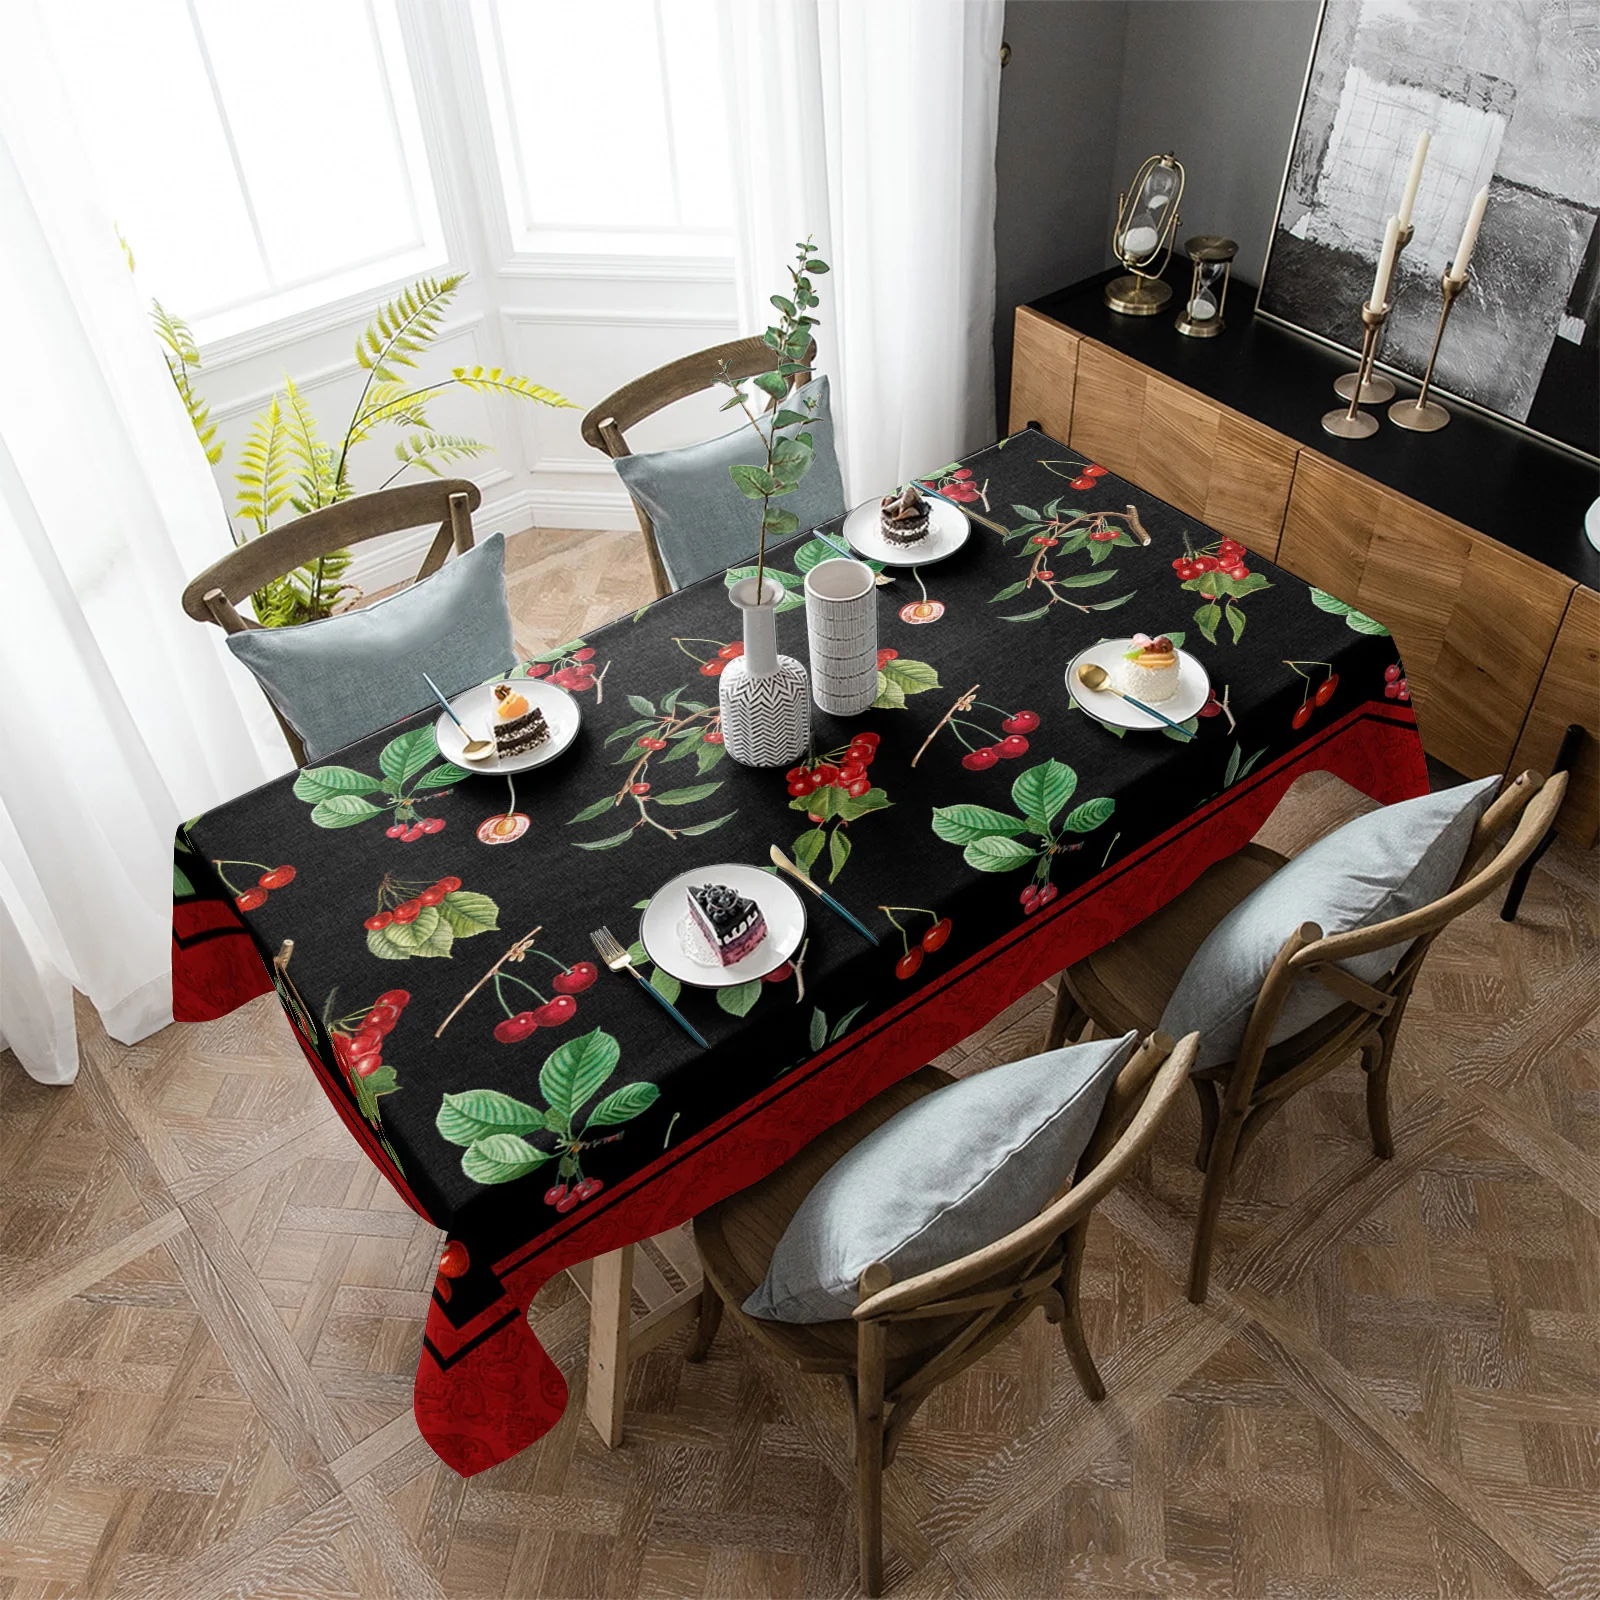 

Водонепроницаемая скатерть в виде вишни, прямоугольное украшение для кухонного стола в винтажном стиле, растения, фрукты